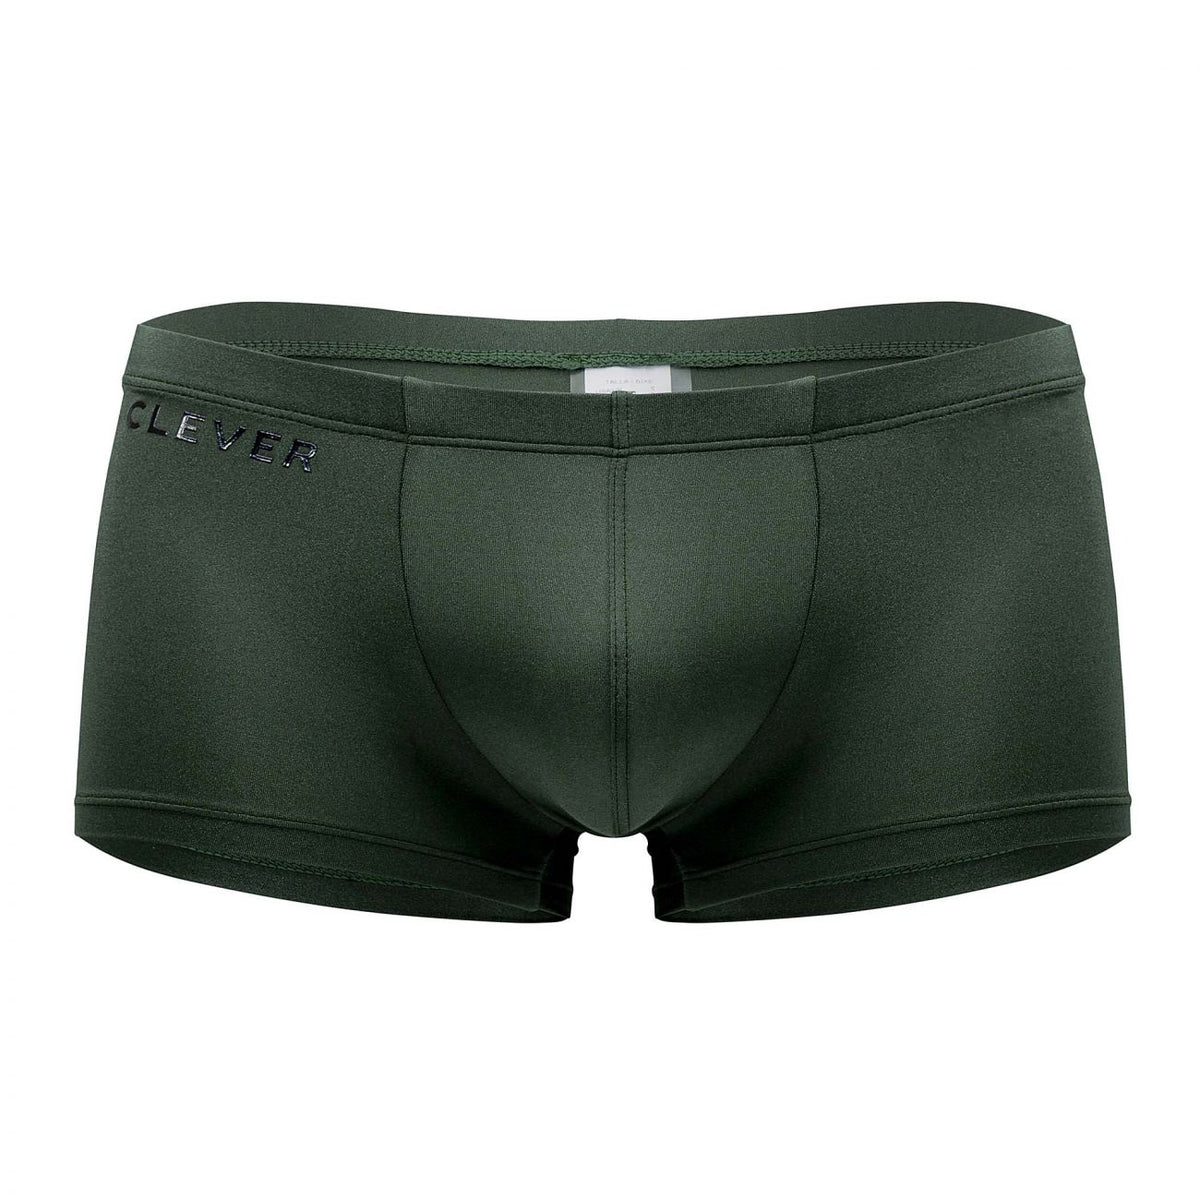 Clever Underwear Emerald Trunks | Shop MensUnderwear.io